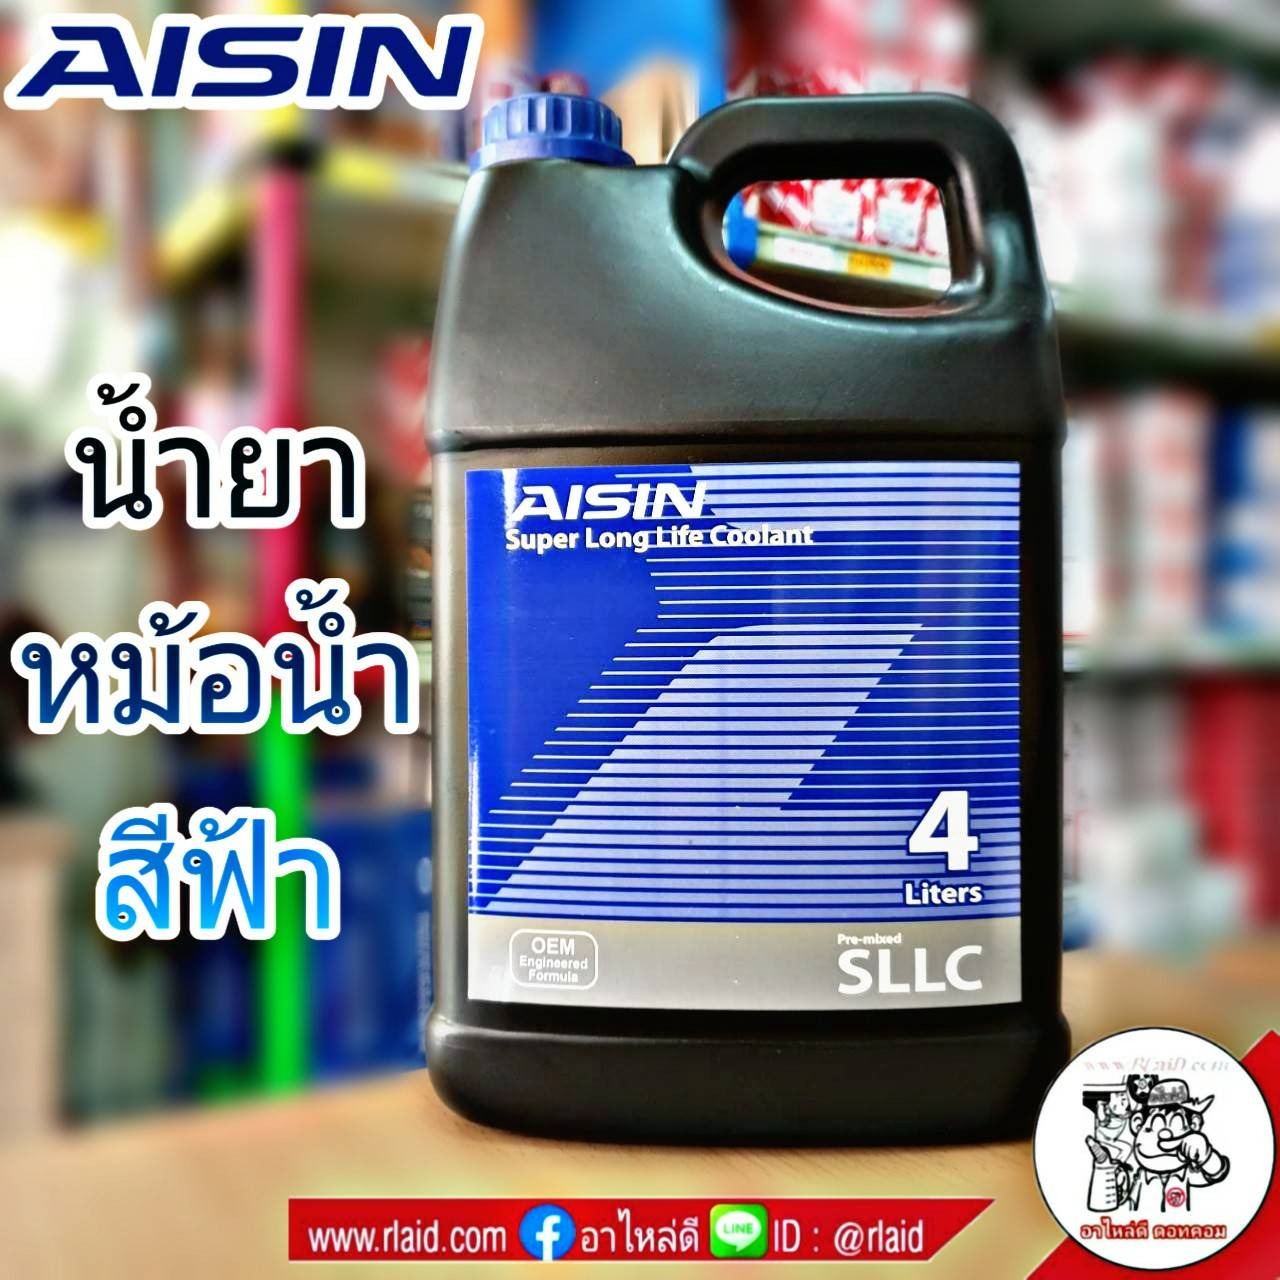 AISIN คูลแลนท์ ไอซิน สีฟ้า 4ลิตร น้ำยาหม้อน้ำ น้ำยาเติมหม้อน้ำ น้ำยาหล่อเย็น Coolant